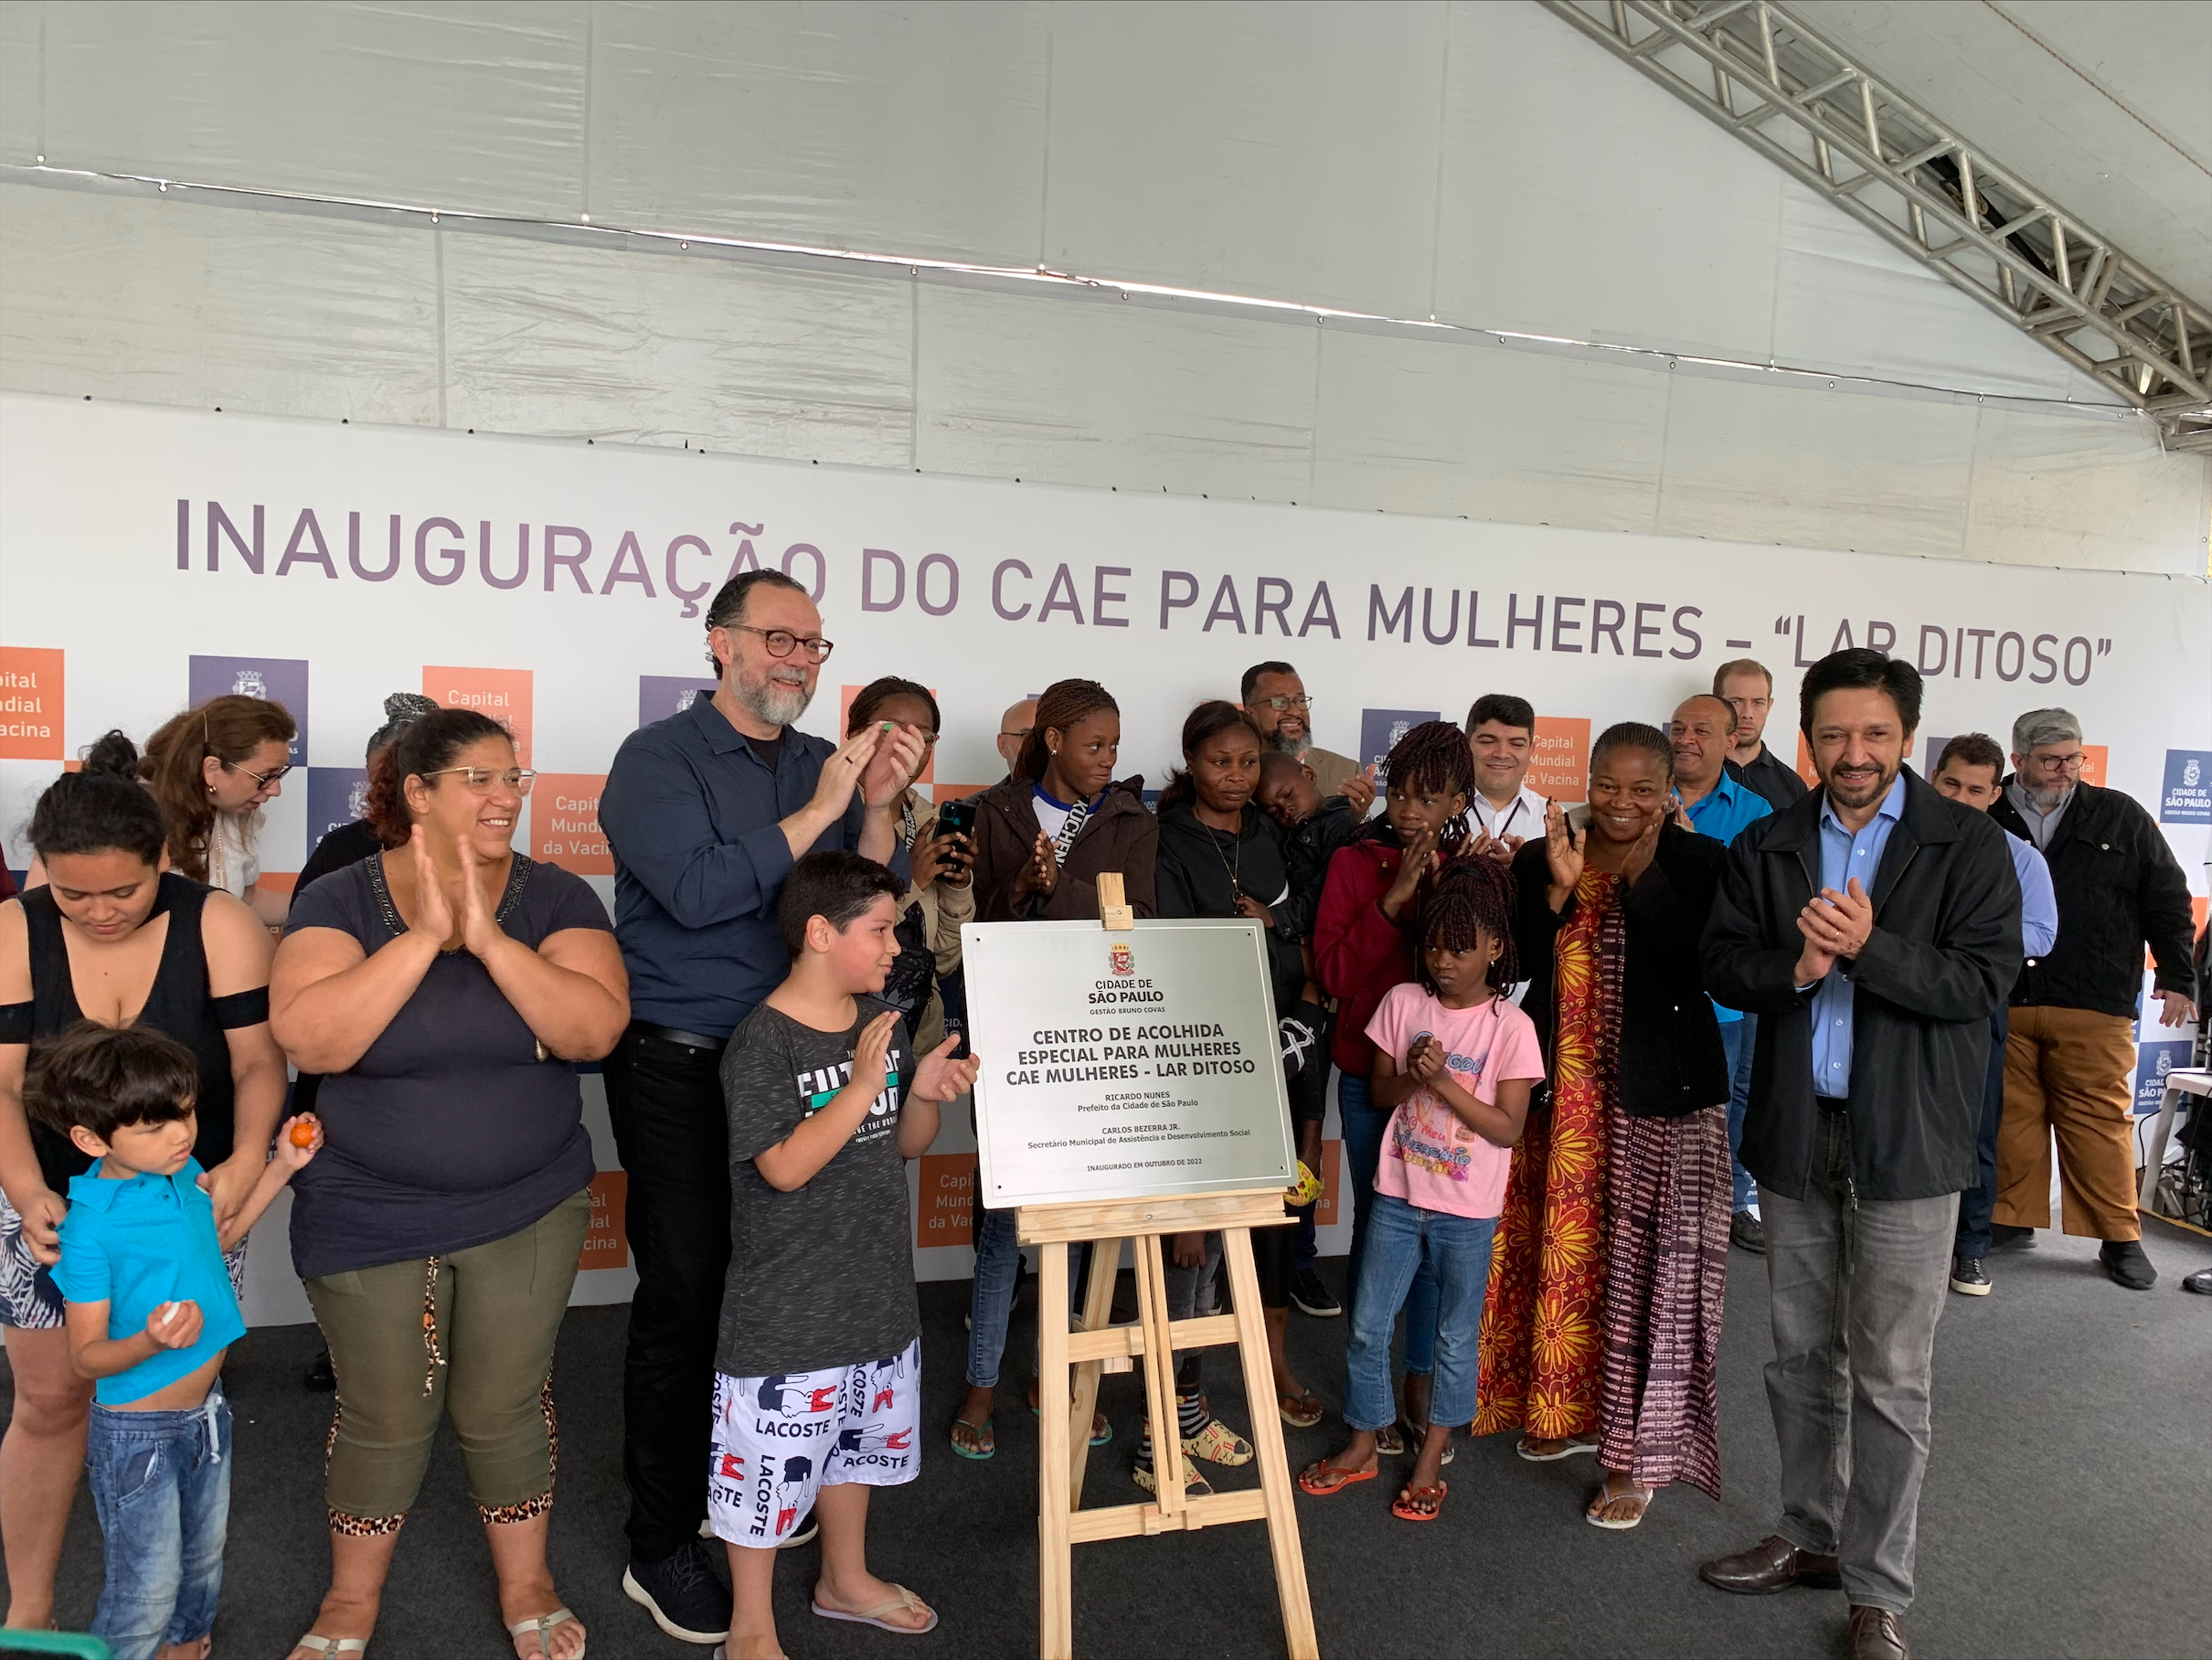 Secretário Carlos Bezerra Jr., Prefeito Ricardo Nunes e mais 17 pessoas no momento de descerramento da placa de inauguração do serviço. 